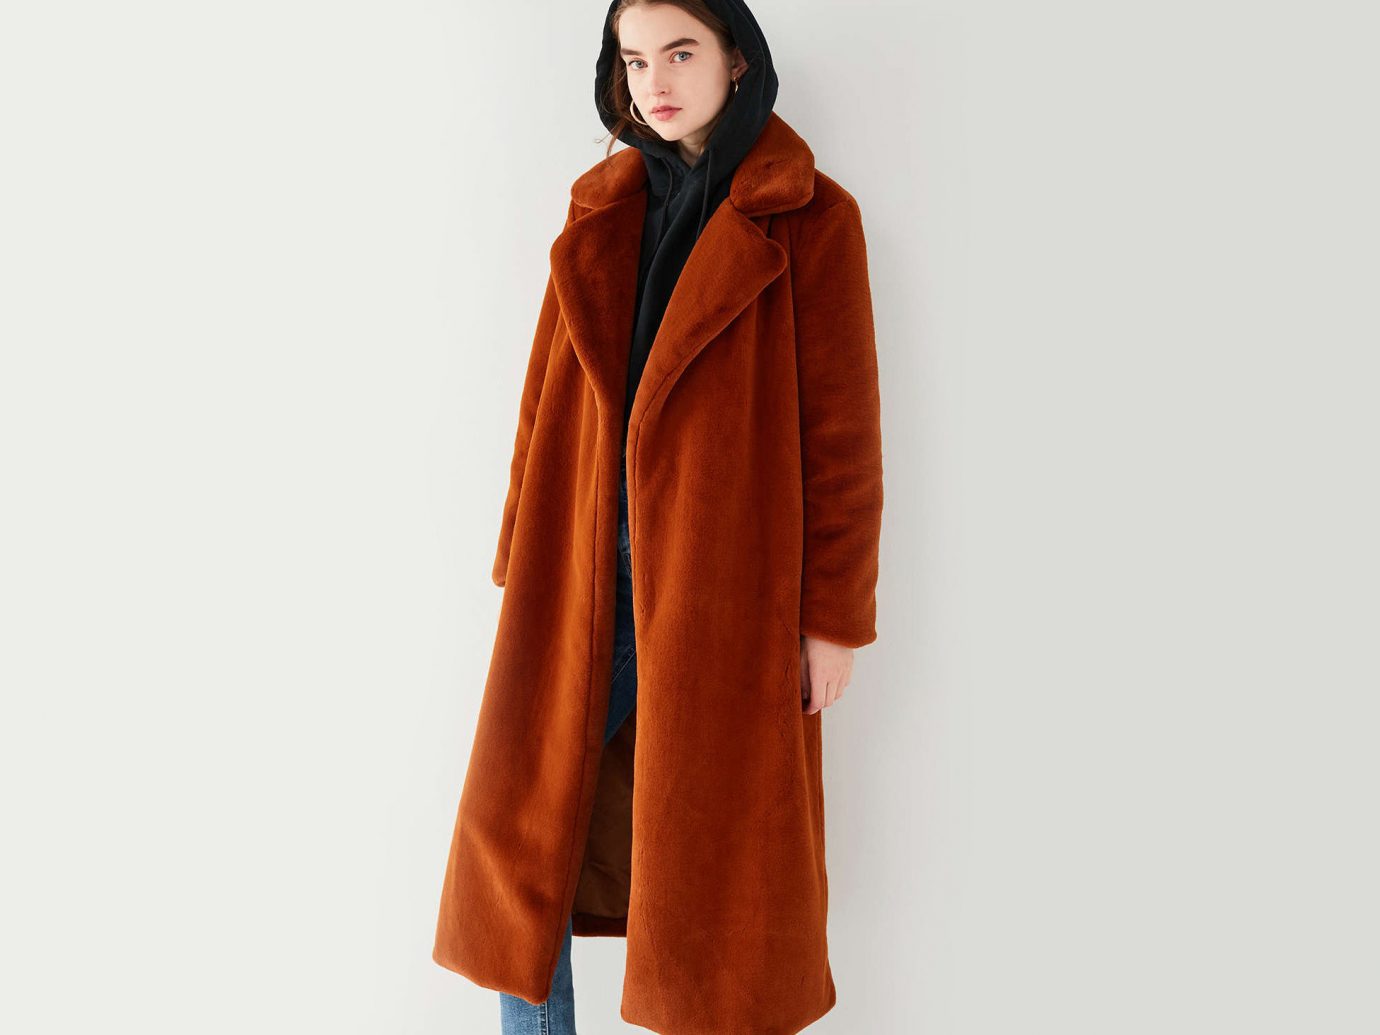 Style + Design Travel Shop fur clothing coat fur wearing hood overcoat jacket neck fashion model dressed orange clothing